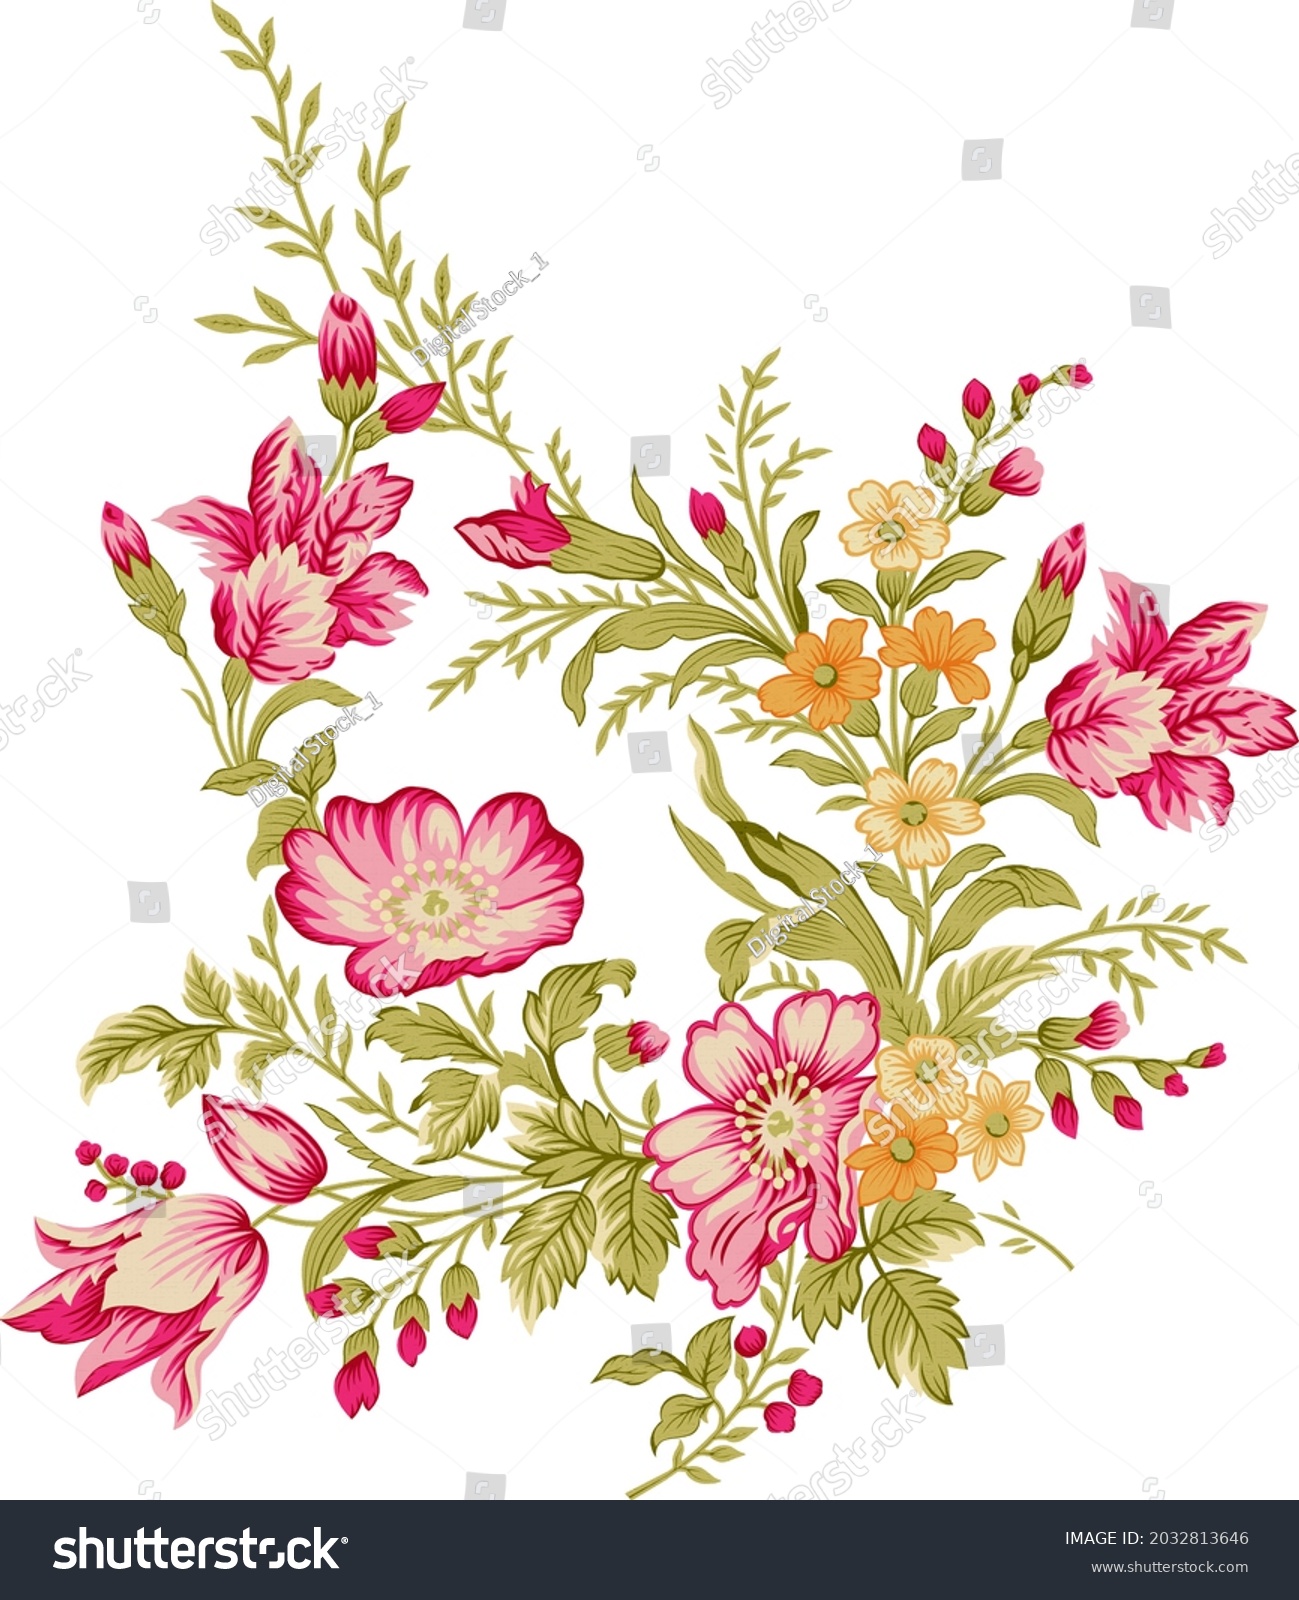 Digital Textile Design Motif Botanical Flower Stock Illustration ...